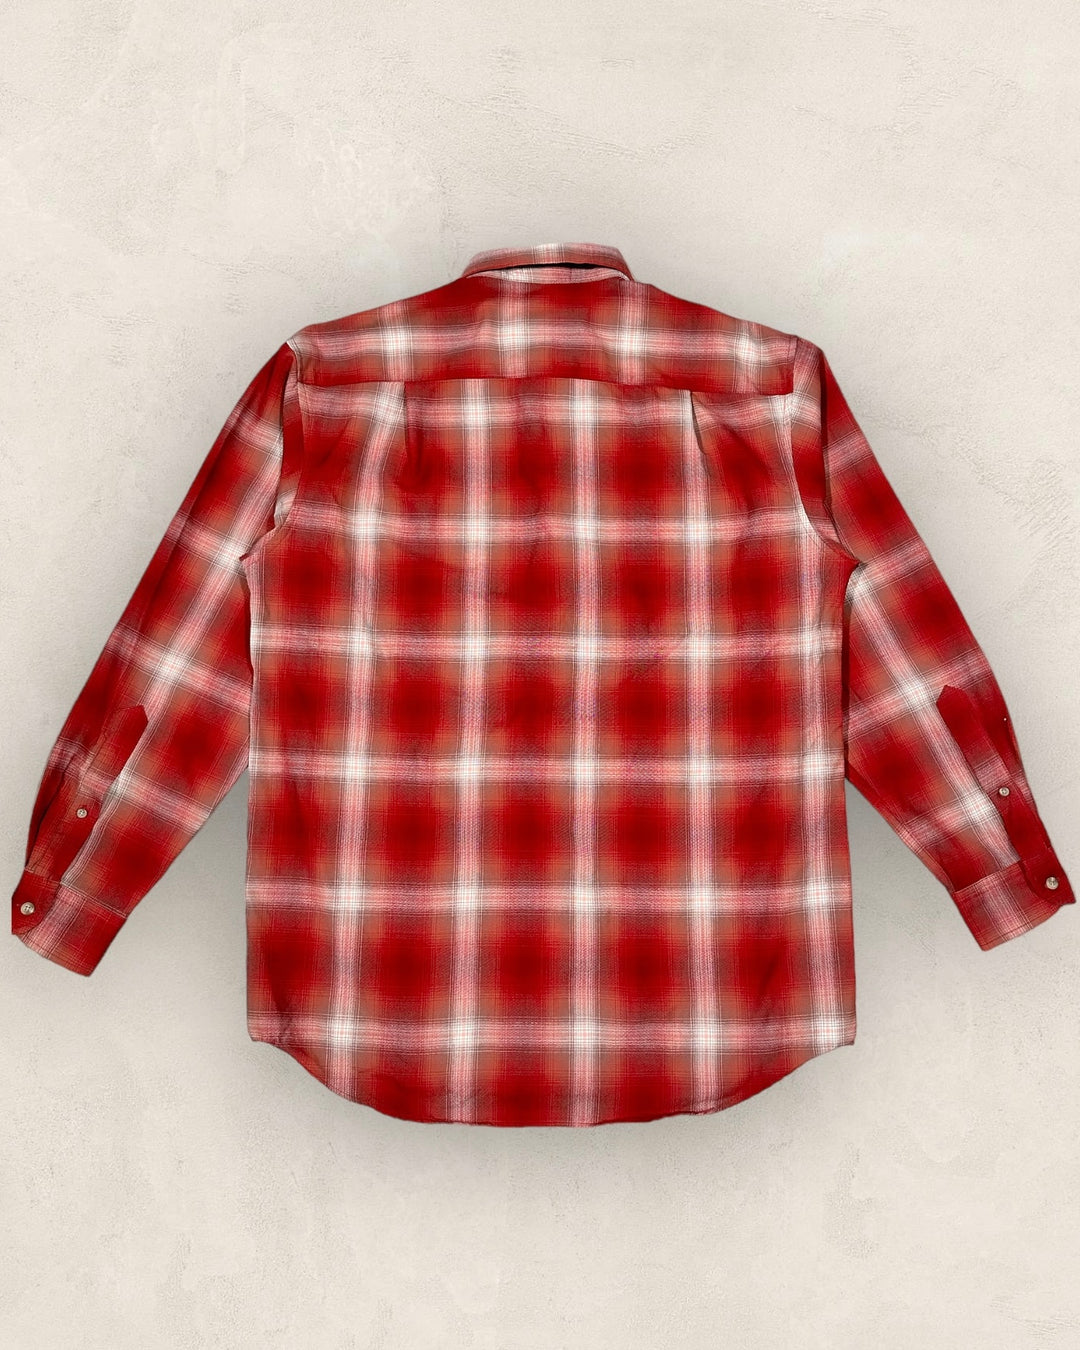 Camisa de lana Pendelton tartán vintage - Talla L/XL